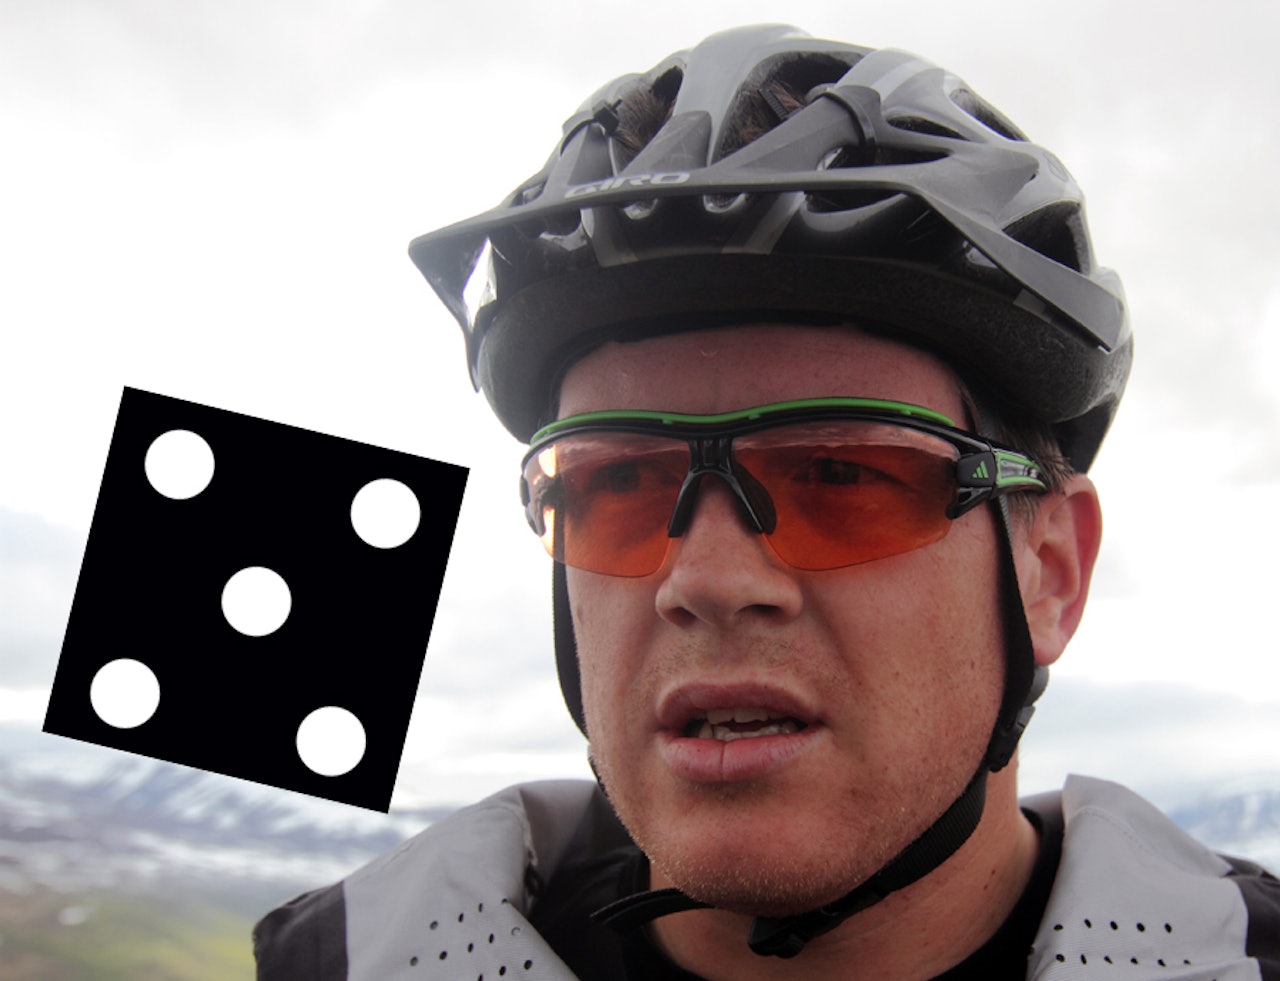 RARING: Det er ikke sikkert denne karen ville blitt finere med tøffere sykkelbriller, men han ser i hvert fall svært godt.